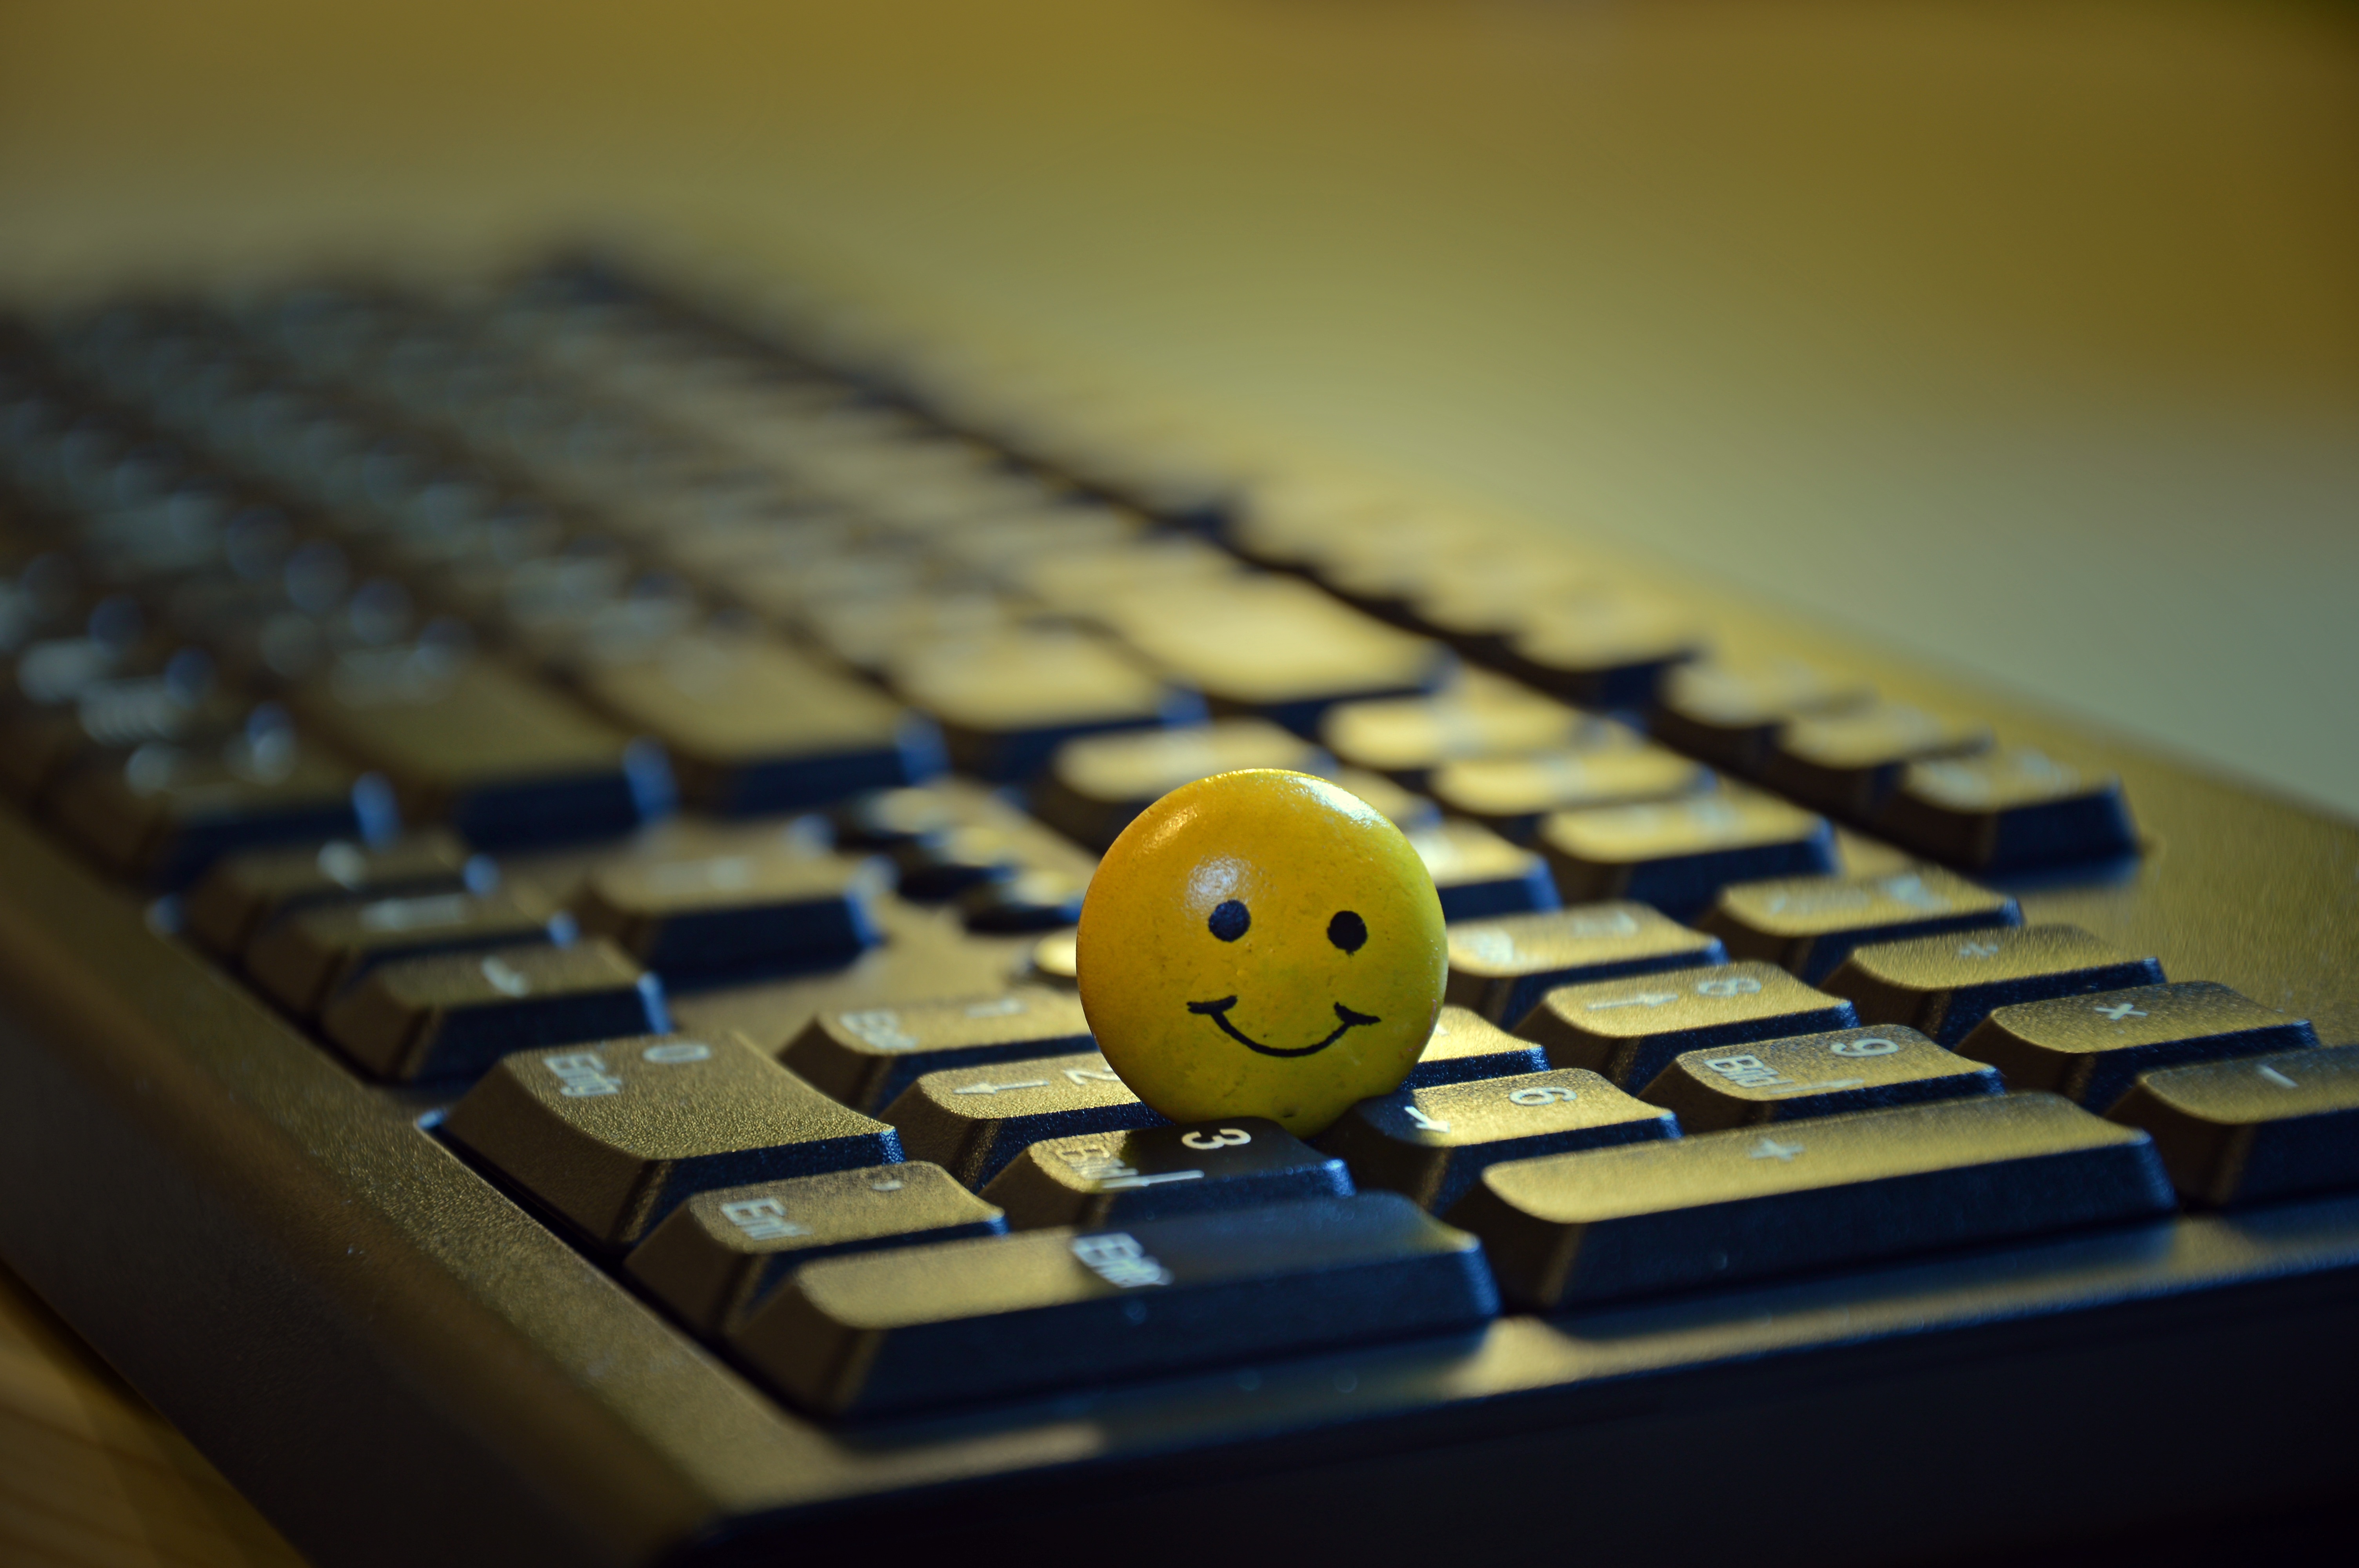 keyboard, smiley, emoticon, miscellanea, miscellaneous, toy, ball